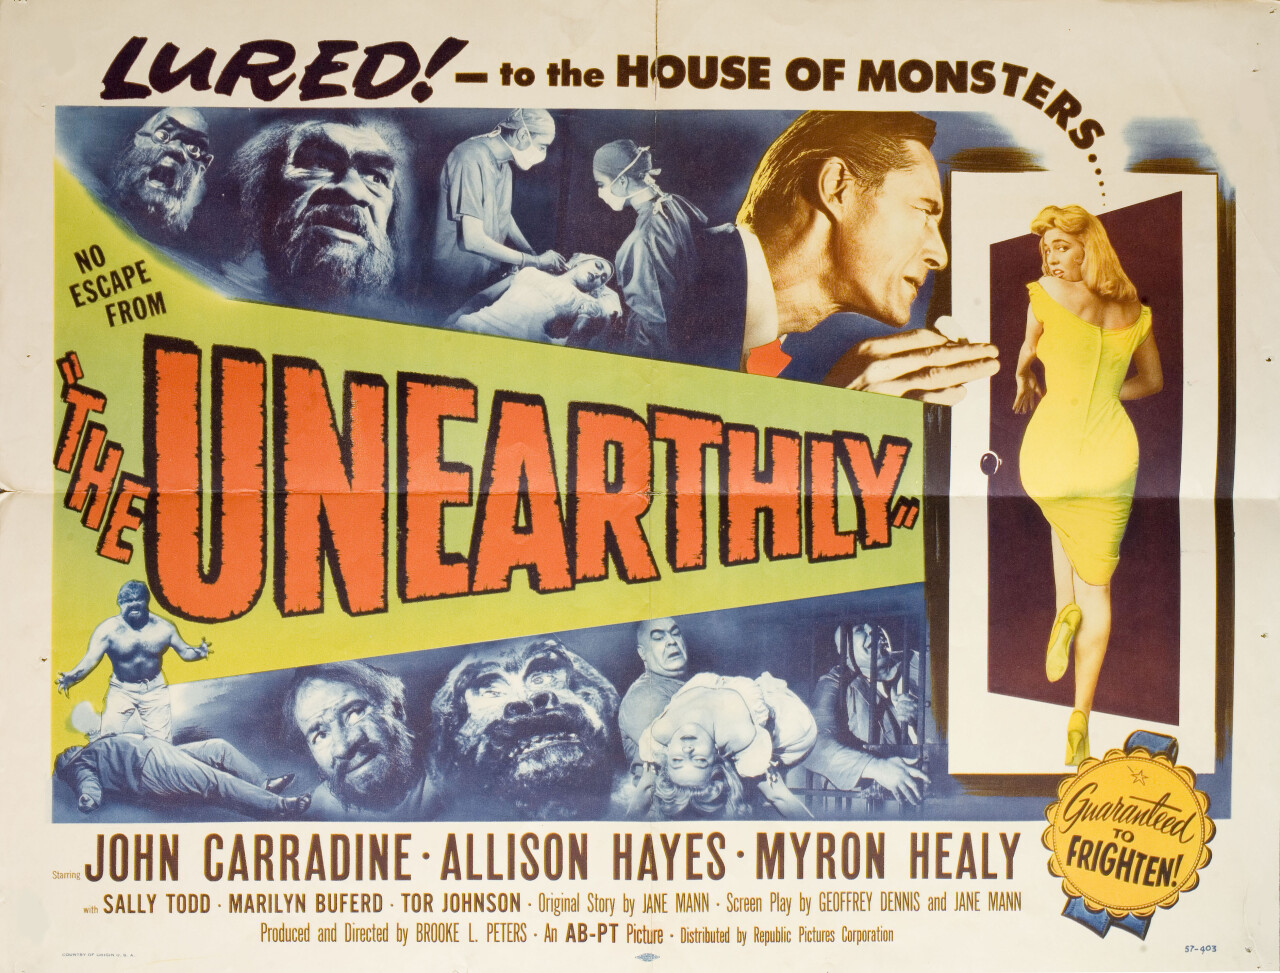 Неземное (The Unearthly, 1957), режиссёр Борис Петров, американский постер к фильму (ужасы, 1957 год)